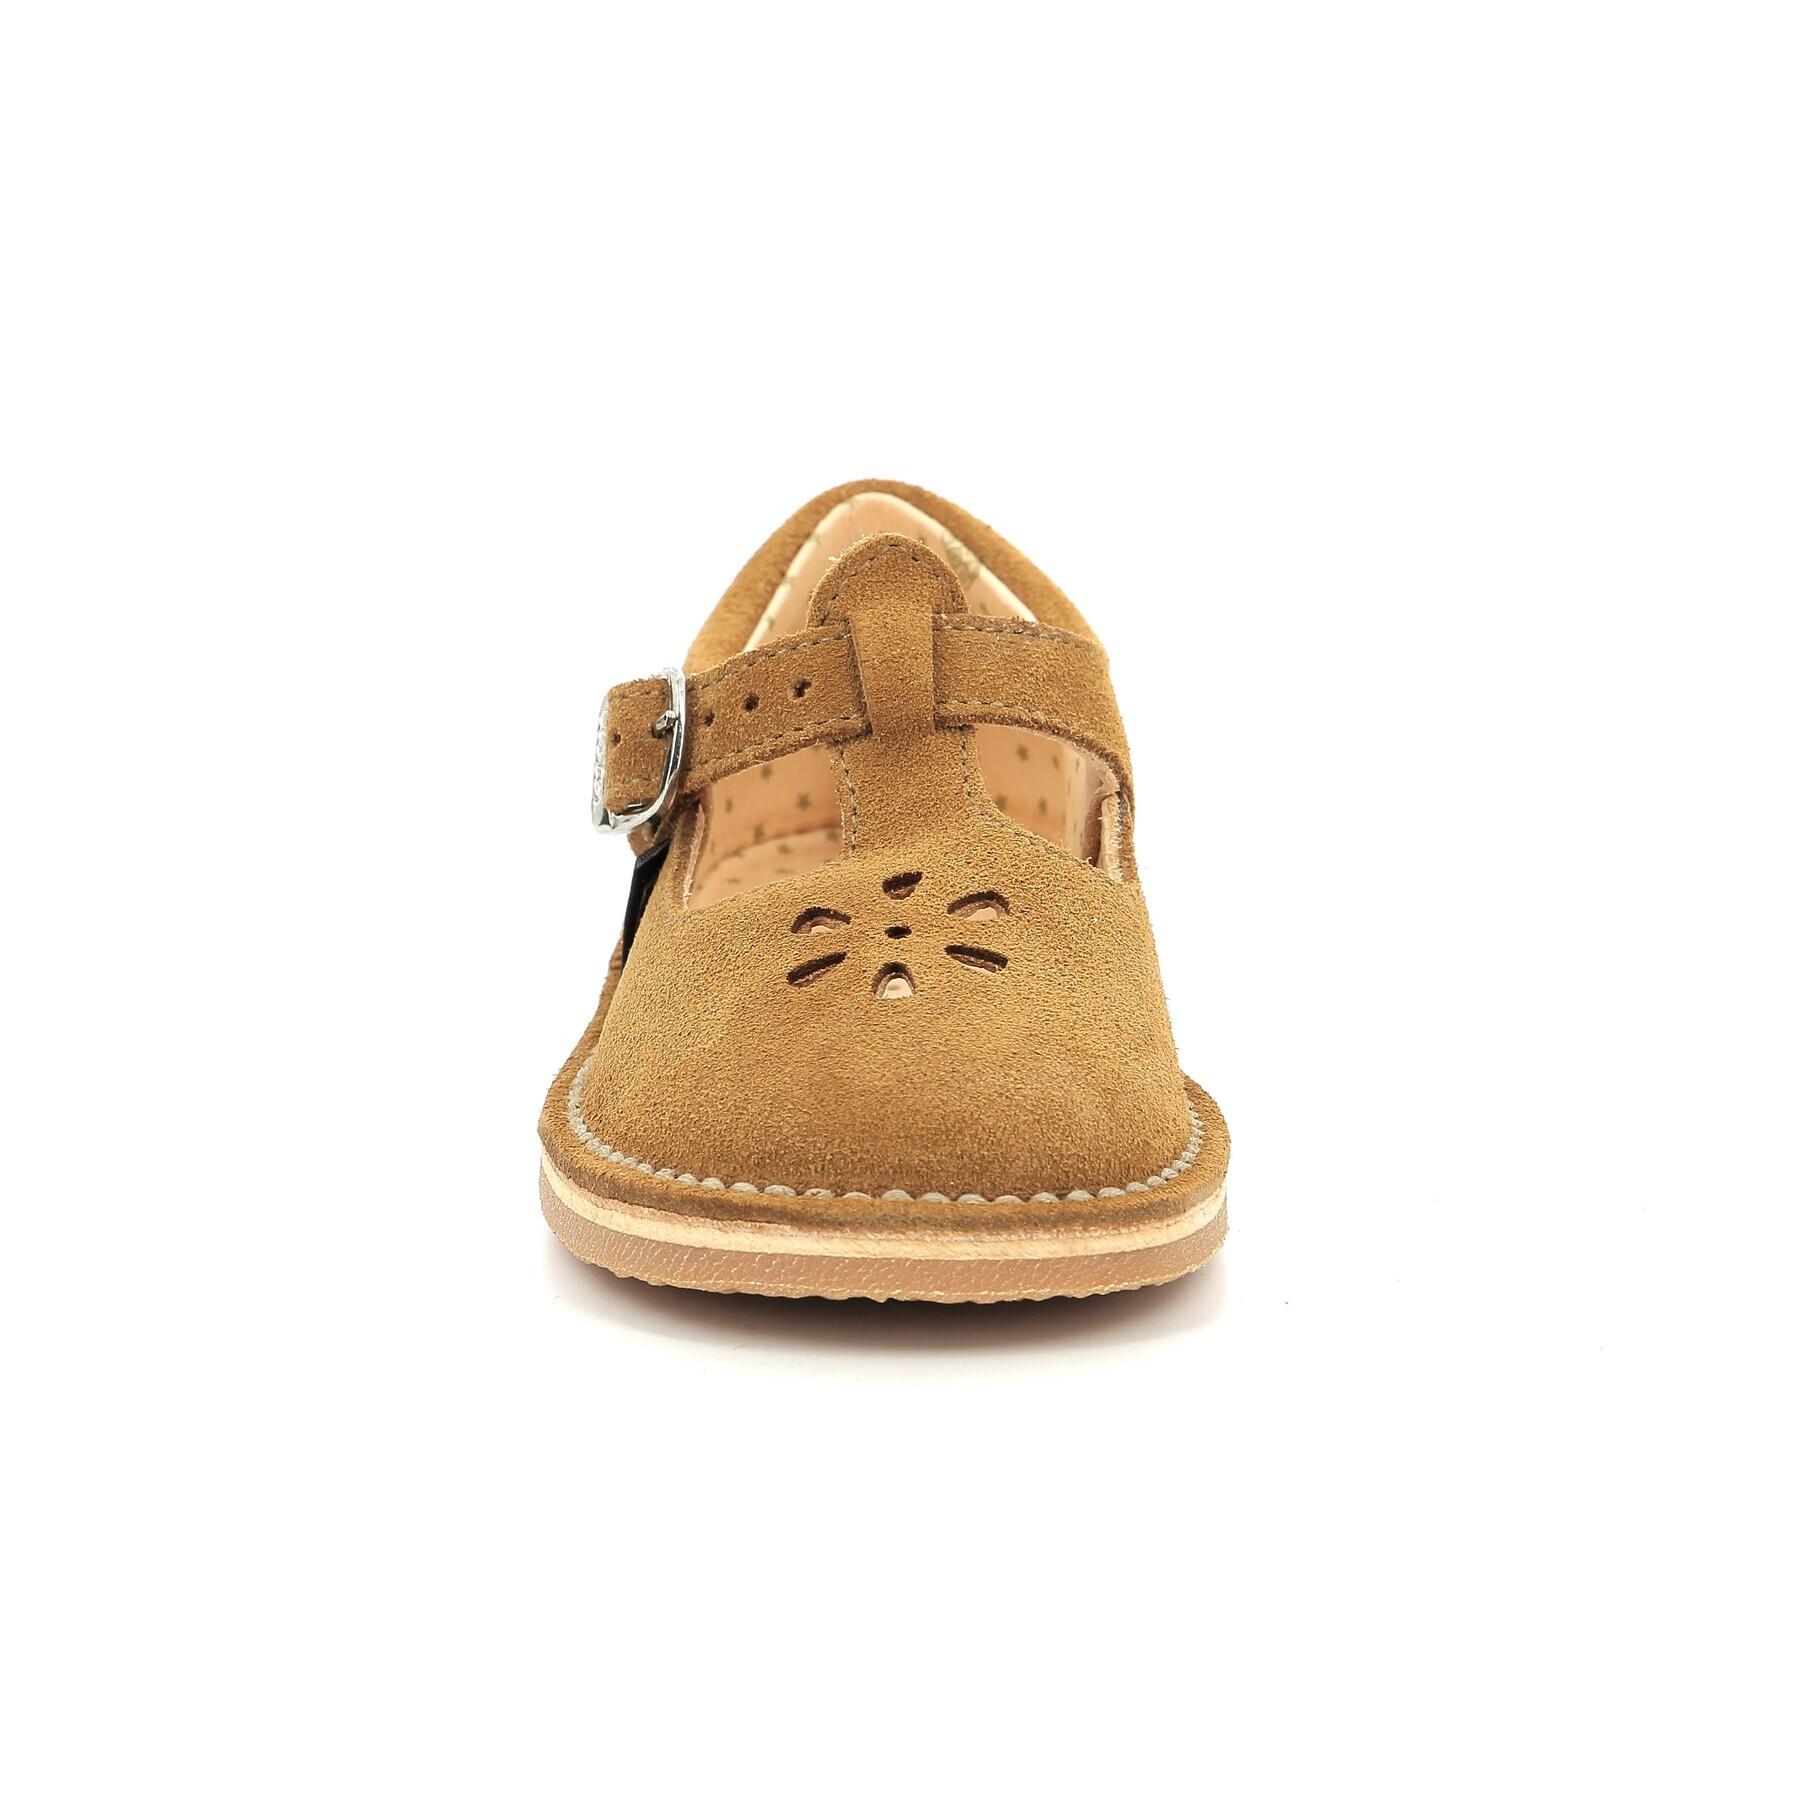 Children's sandals Aster Dingo-2